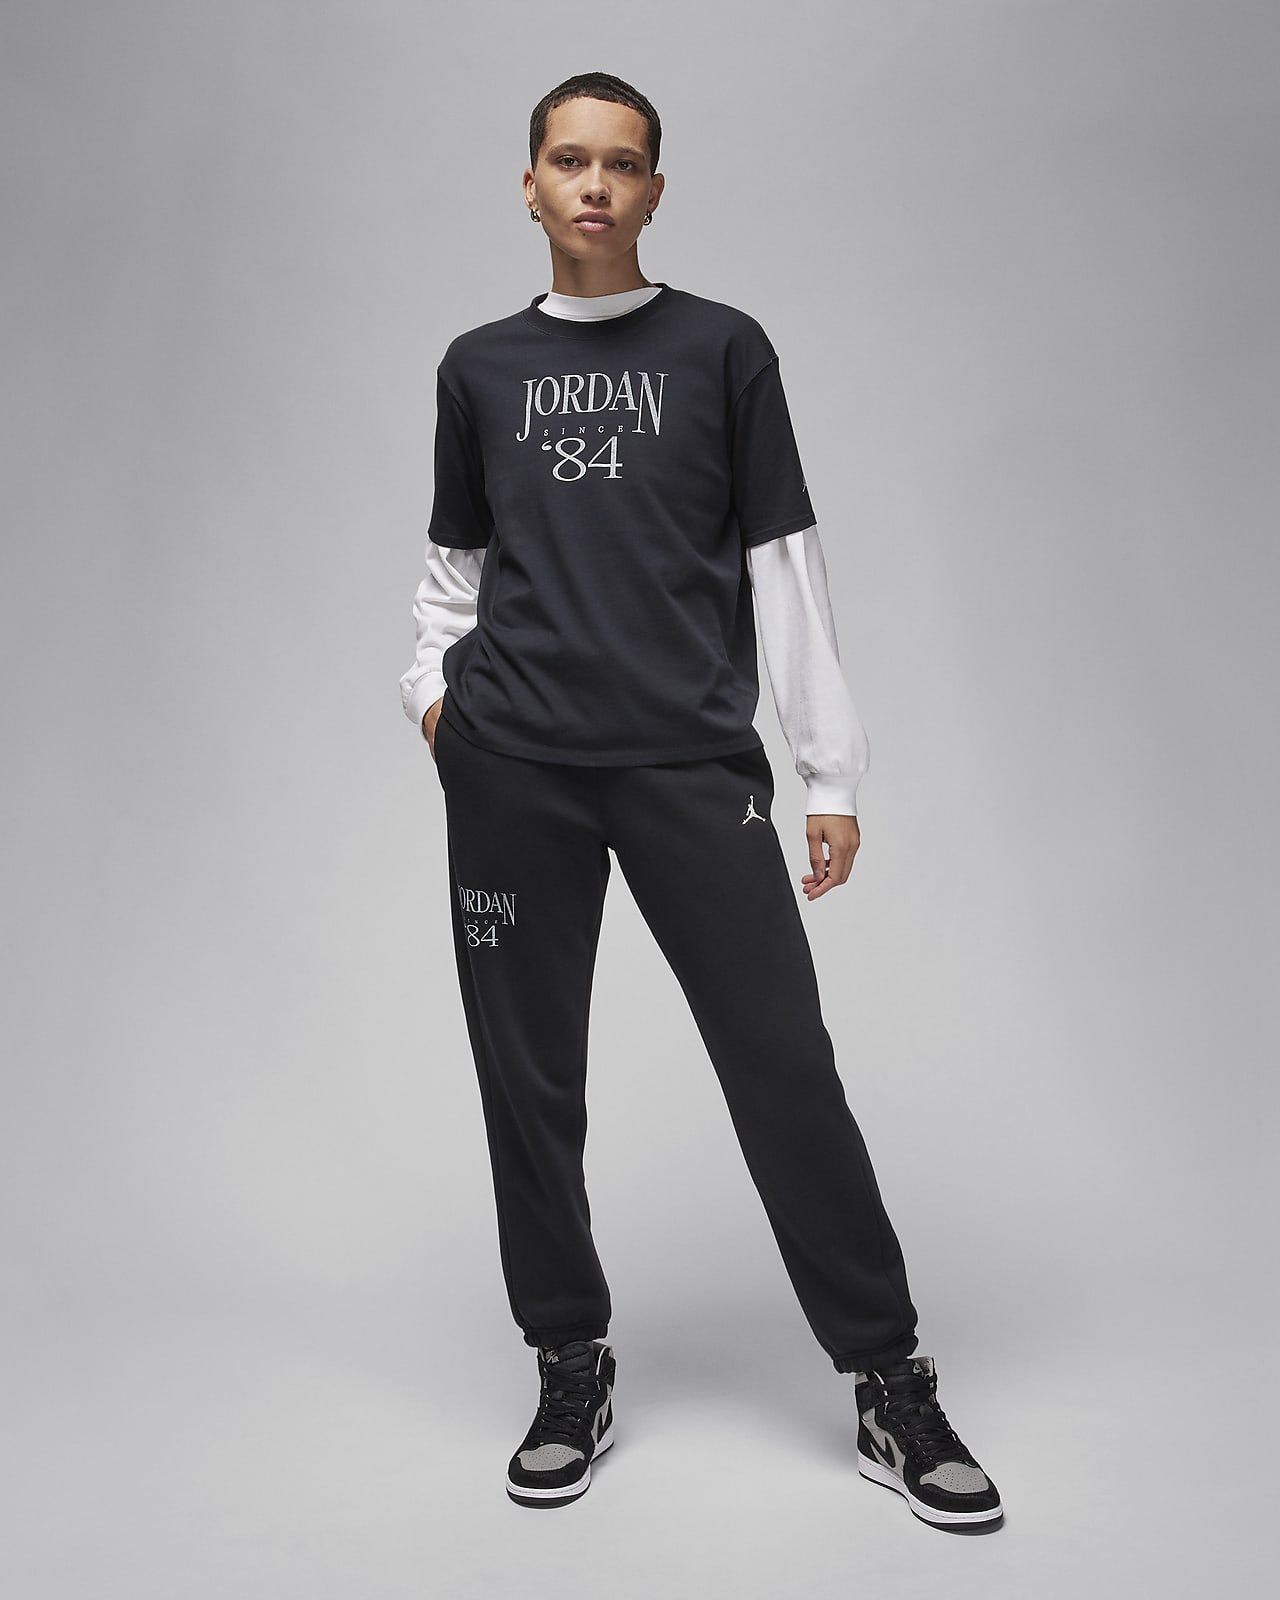 Pants acondicionados para el invierno para mujer Jordan Flight Fleece. Nike  MX